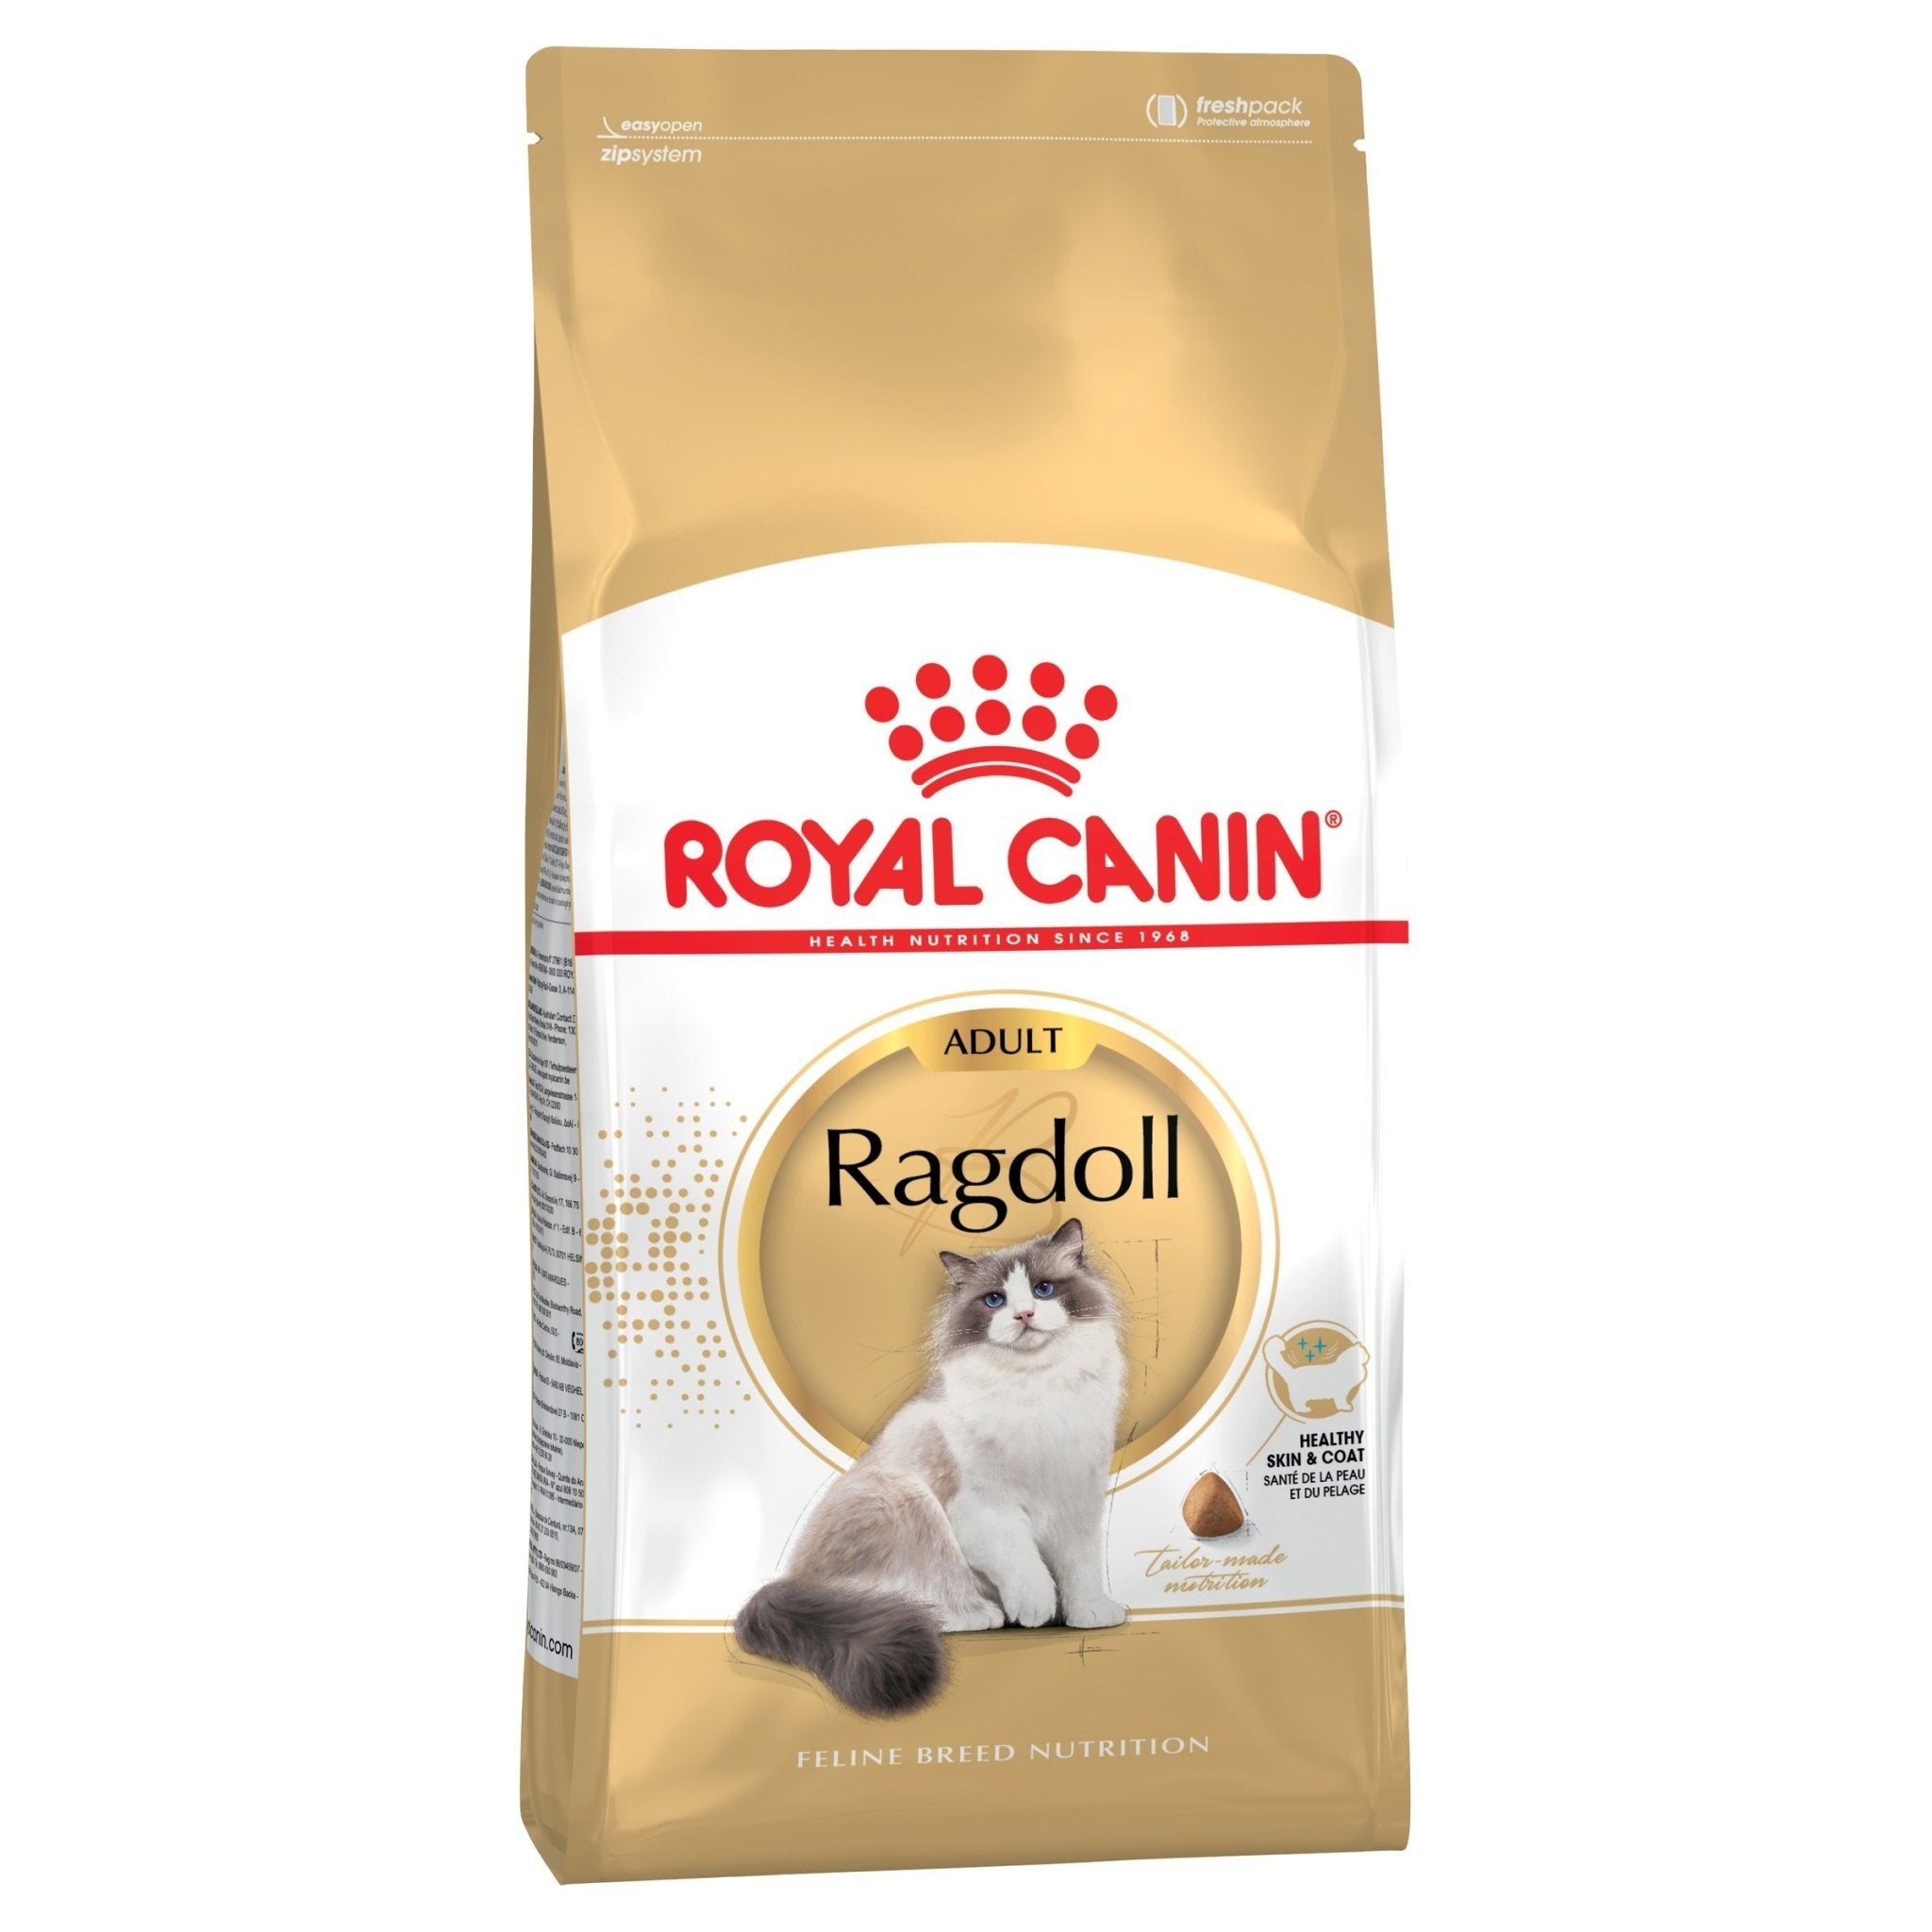 Royal Canin Ragdoll Dry Food 2kg